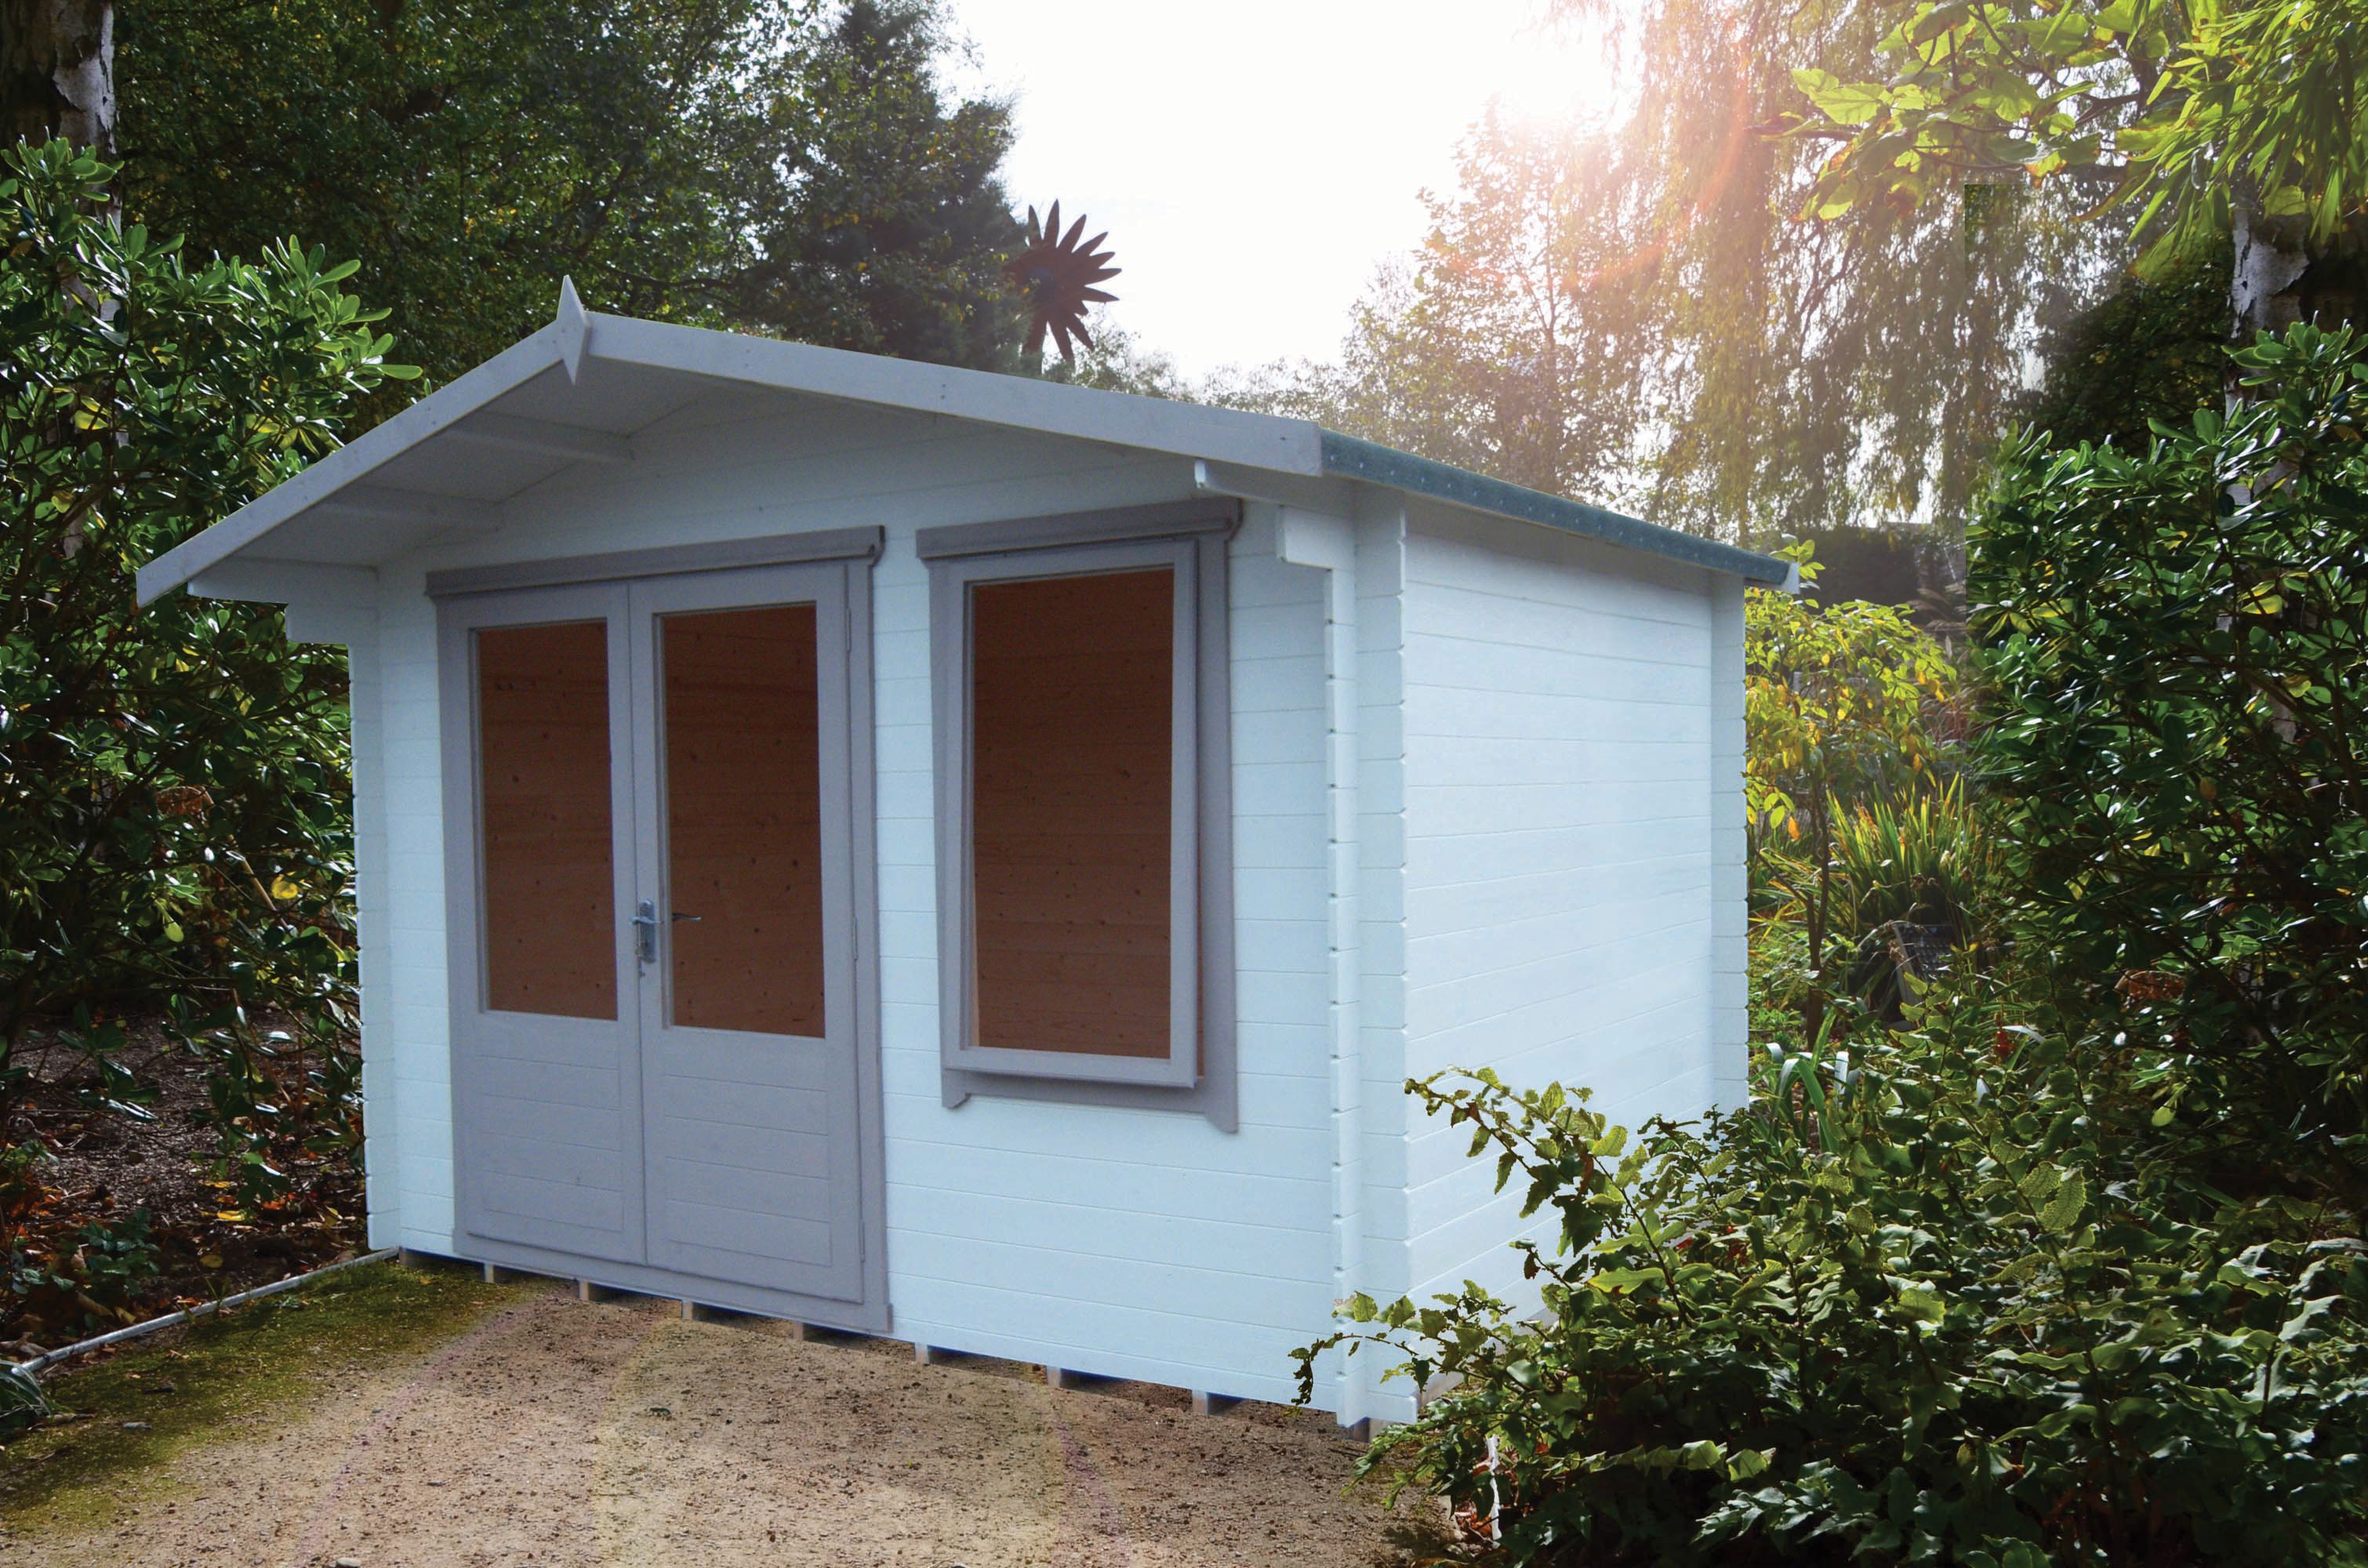 Shire Berryfield 11 x 10ft Double Door Garden Log Cabin